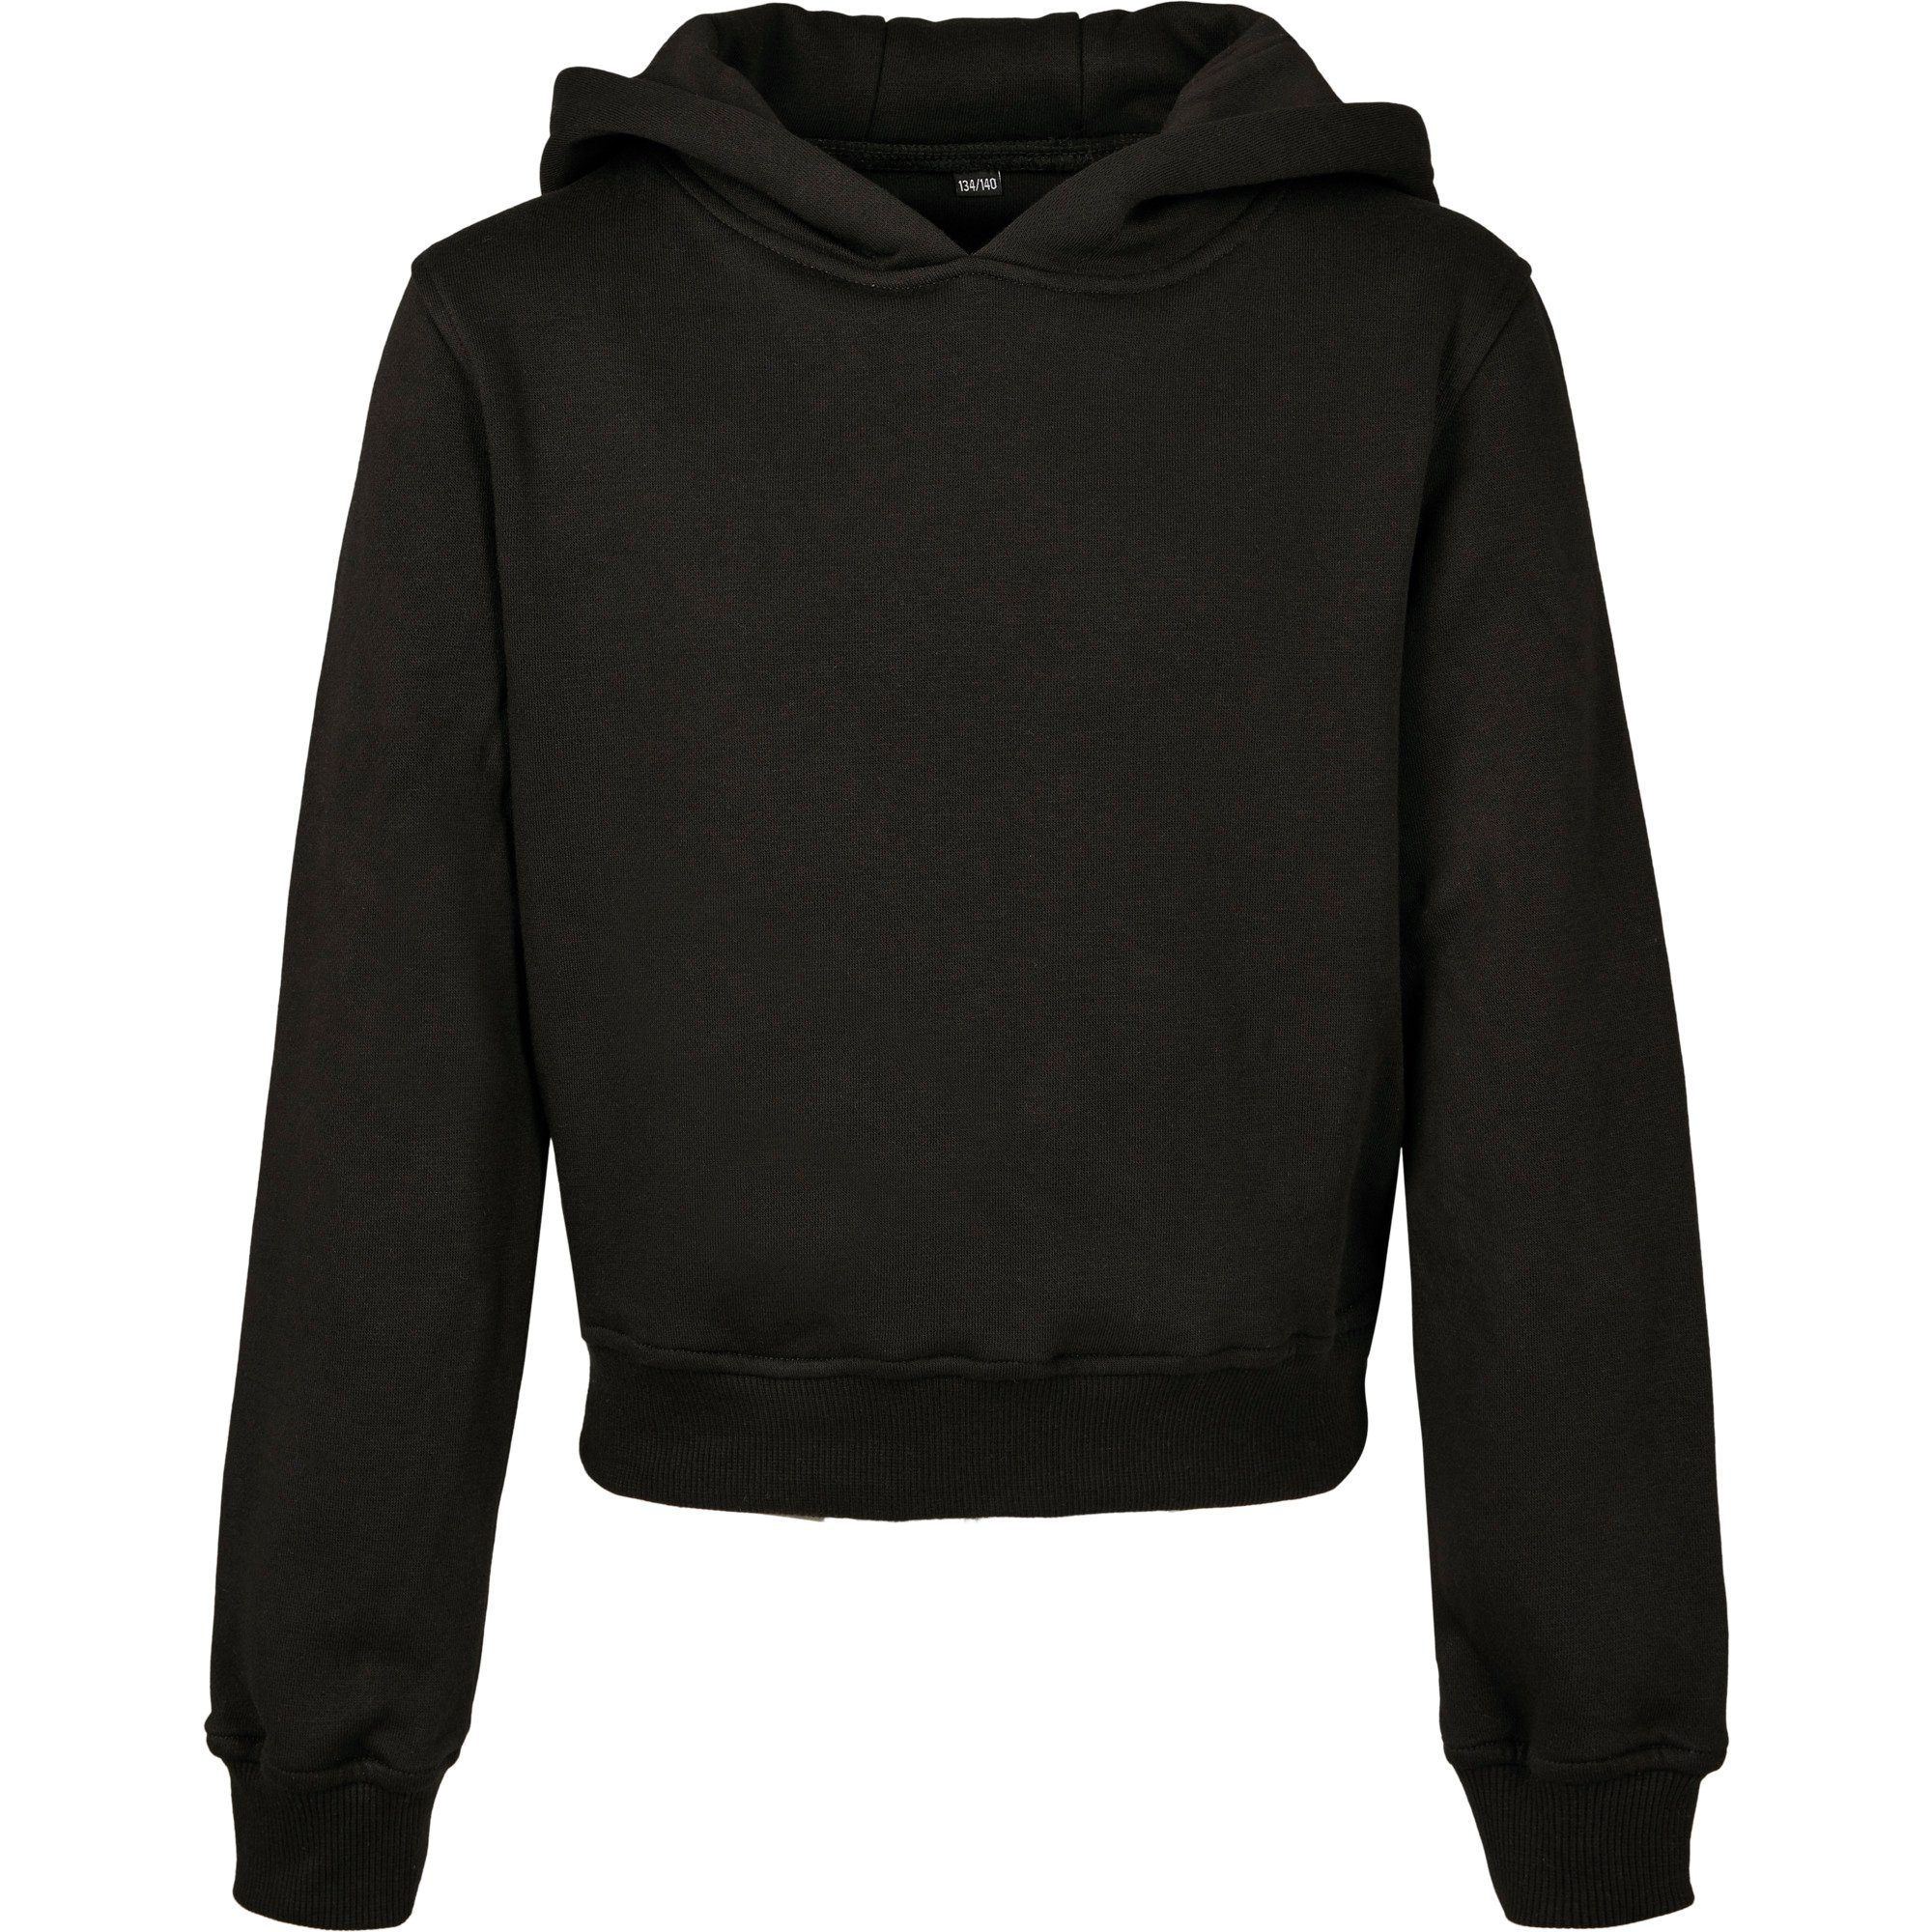 Hoody Brand Kapuzen Kapuzen-Sweater Kapuzensweatshirt Mädchen Your Cropped / Sweatshirt Build modischer für bauchfreier Schwarz bauchfrei